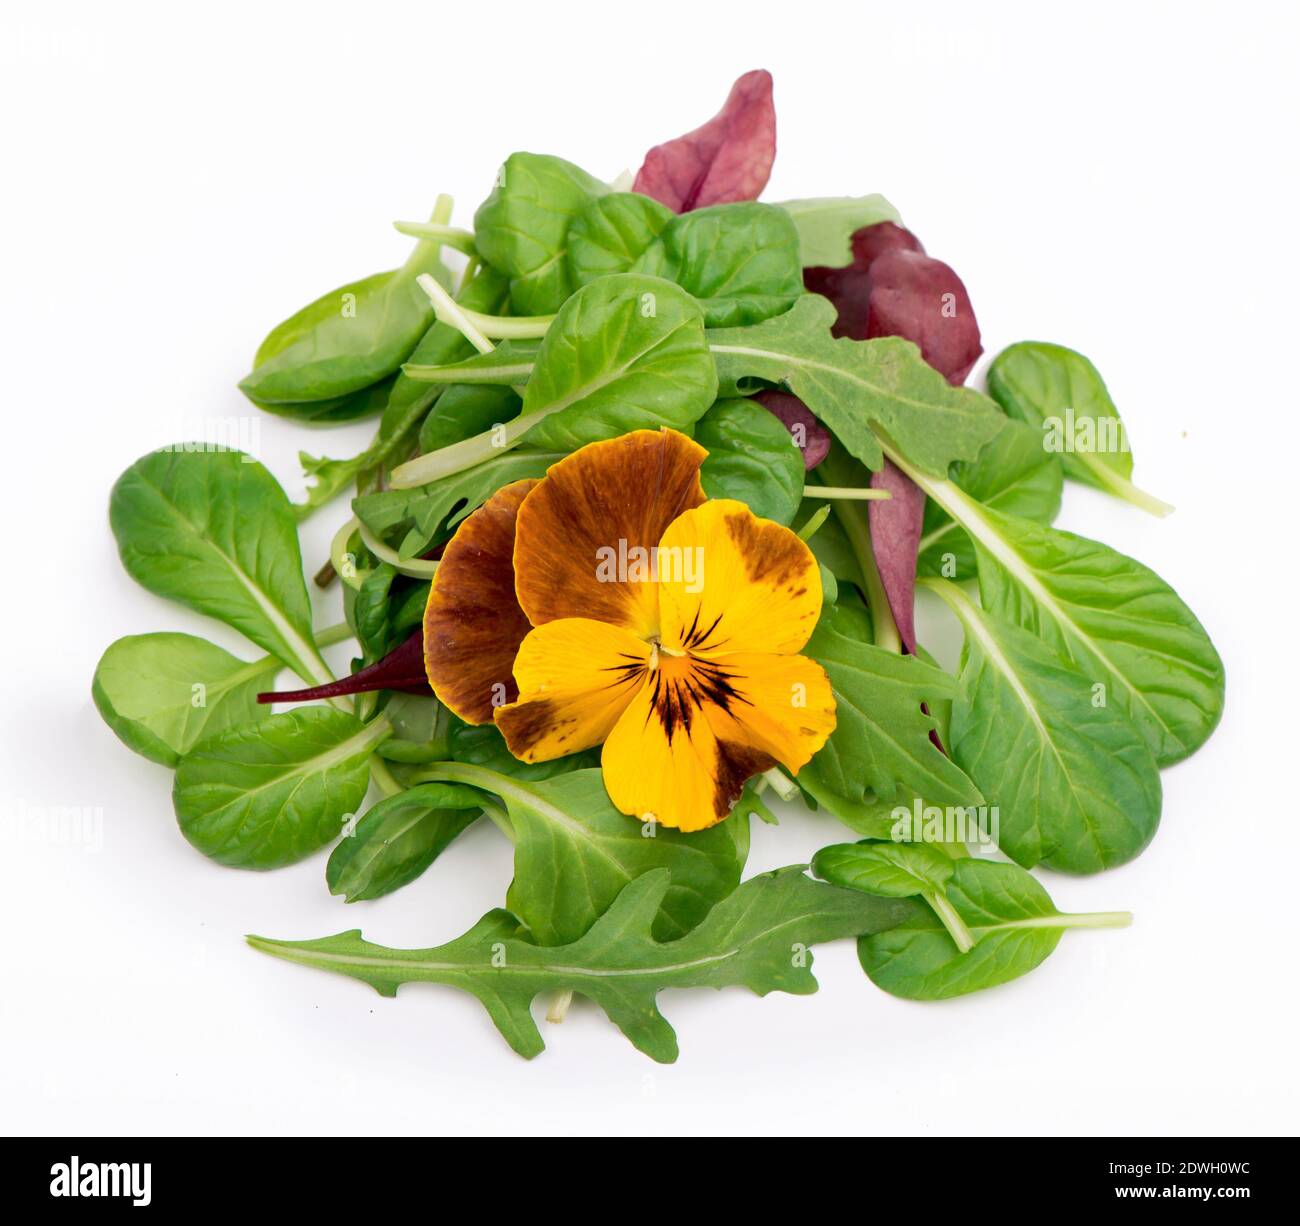 Salat mit Rucola Spinatsalat rot auf weiß verrühren Hintergrund Stockfoto